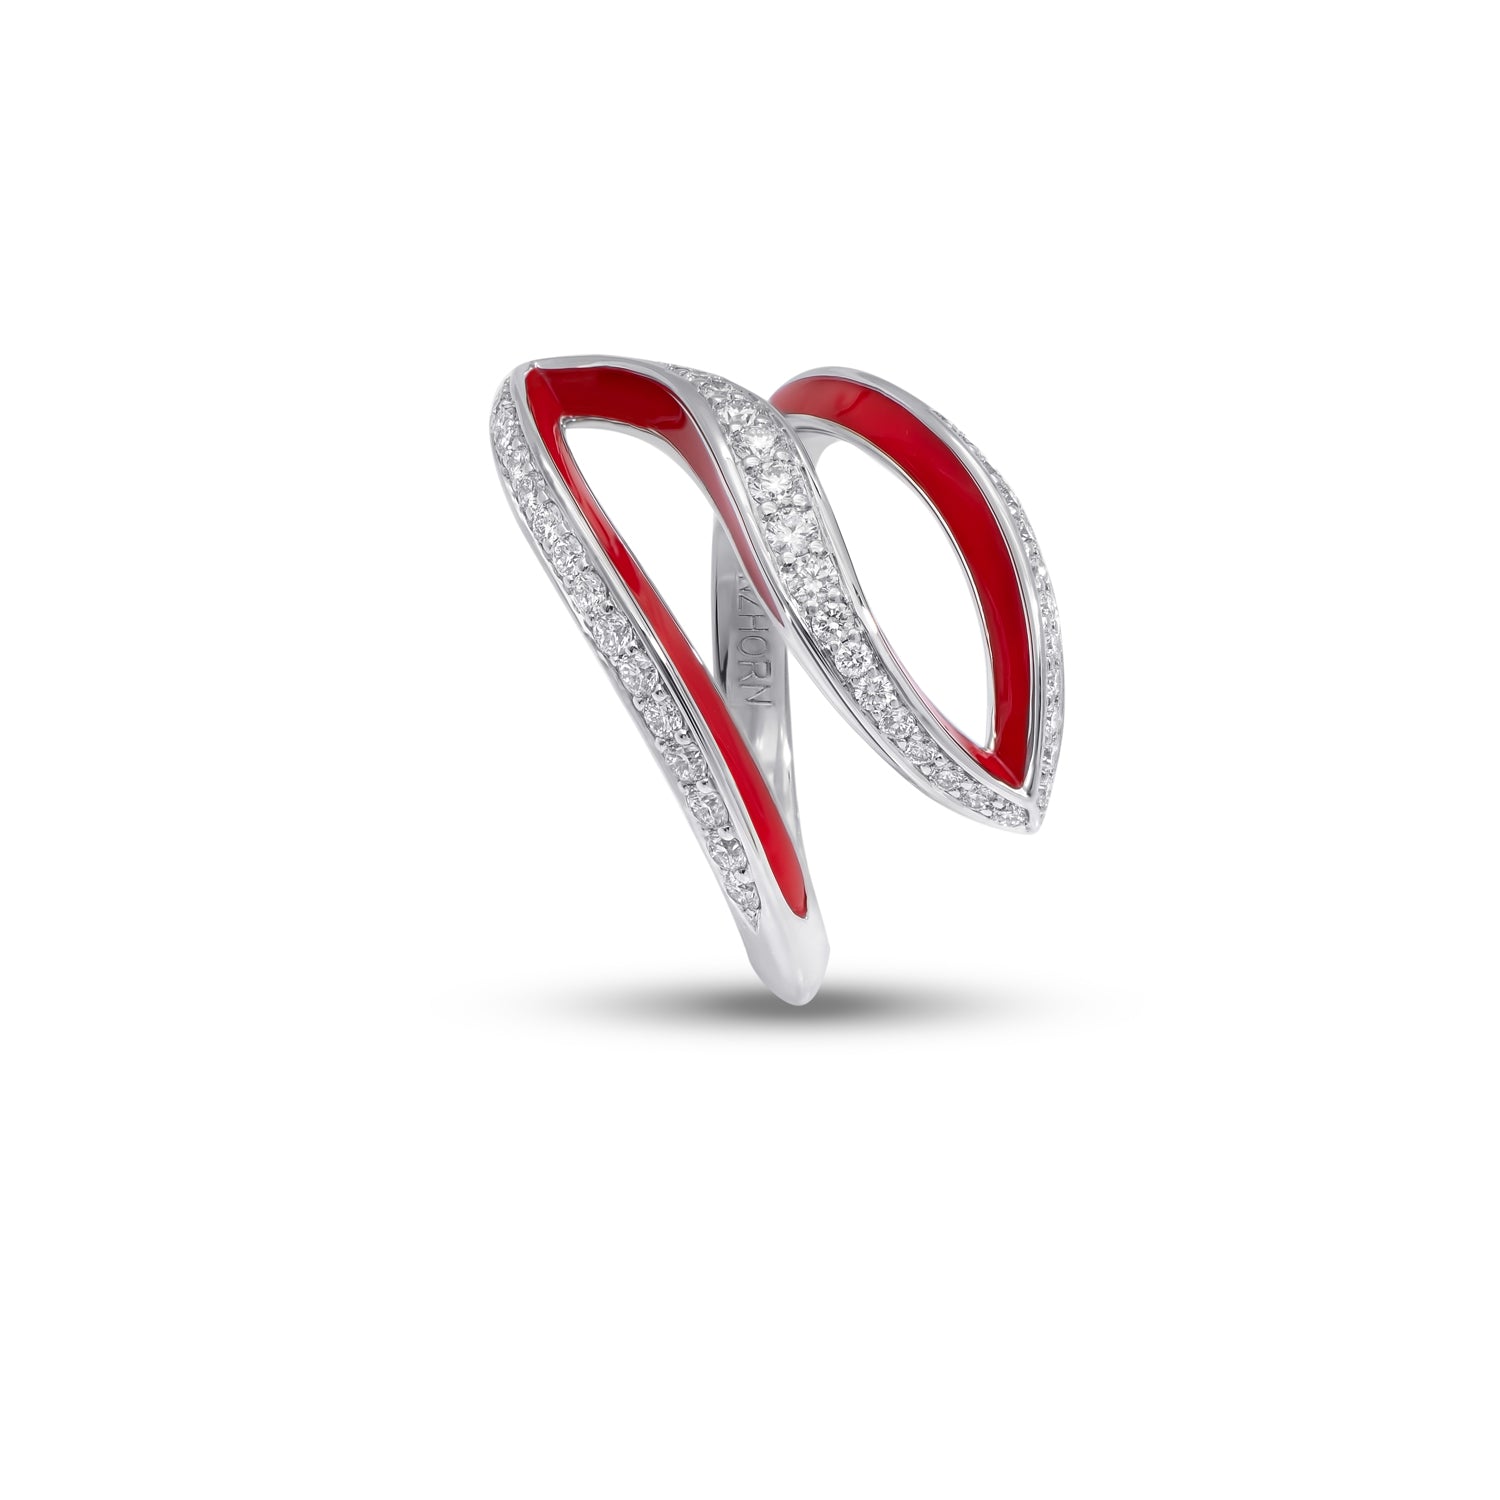 VIVA kleiner geschwungener Ring mit Diamanten und roter Emaille